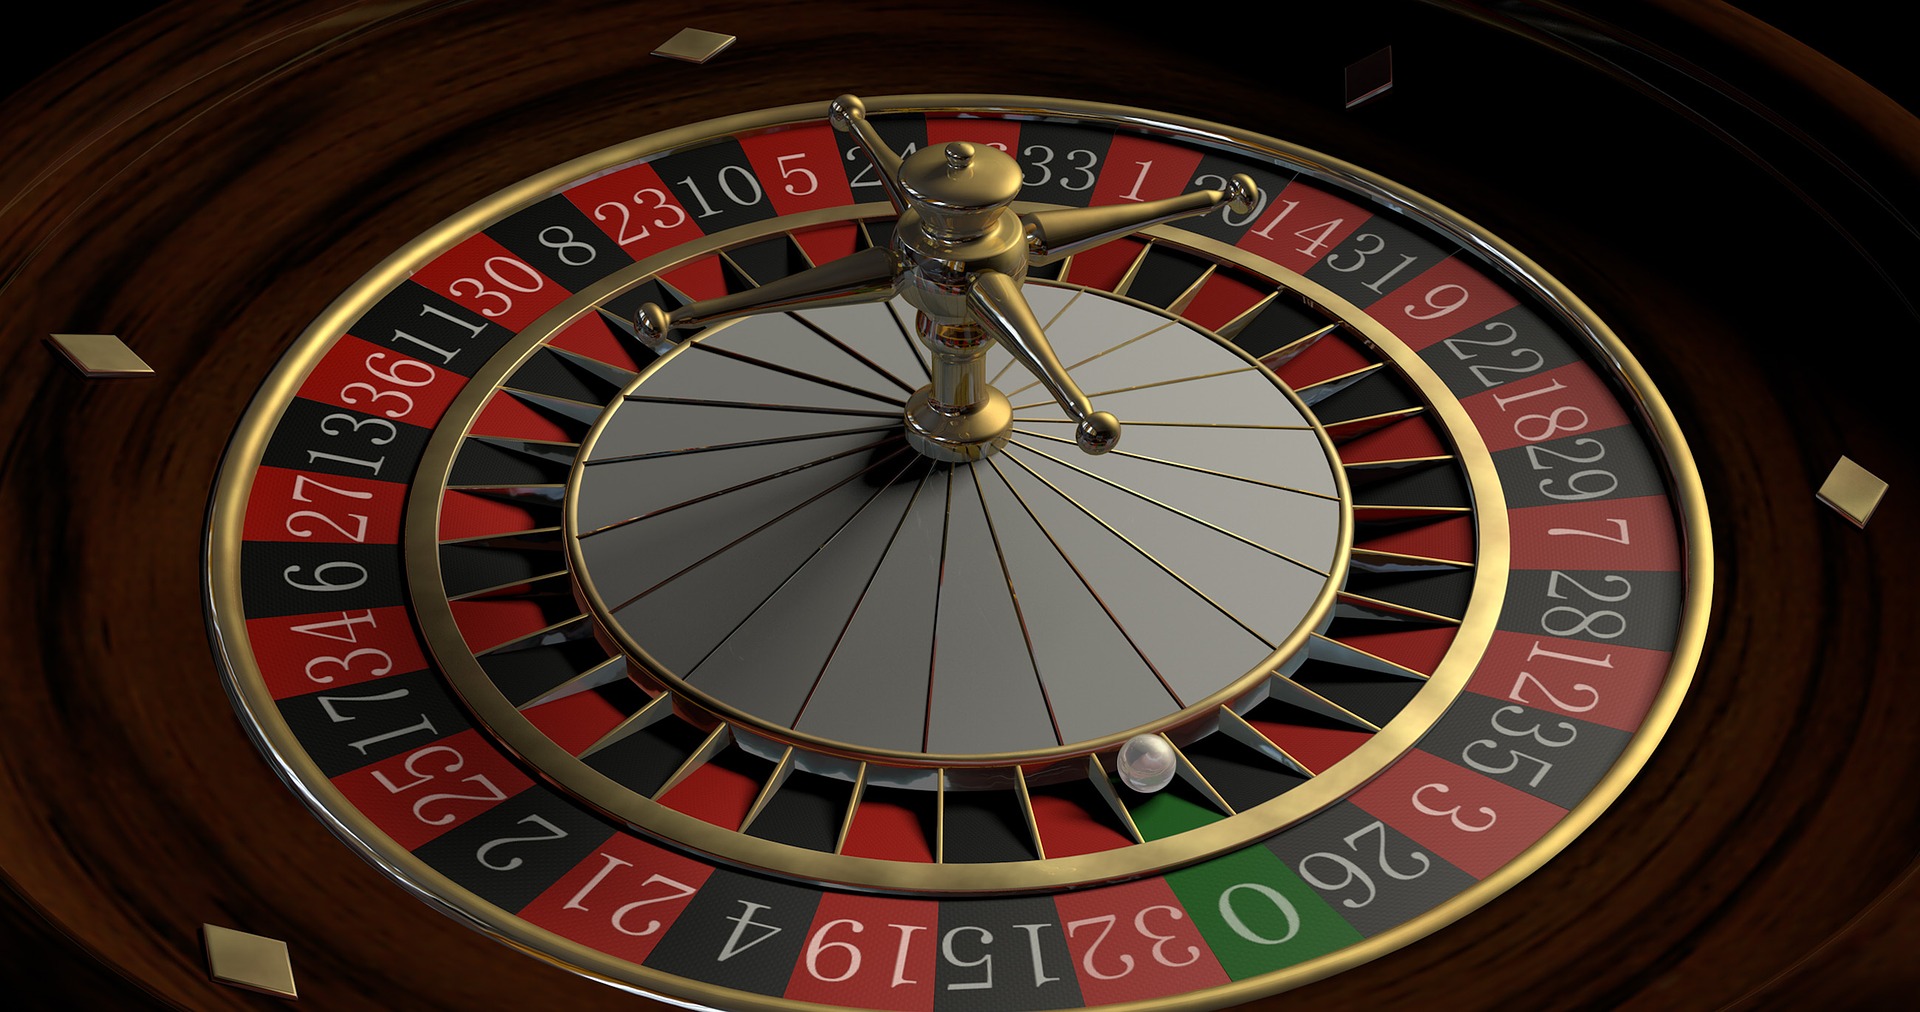 judi-strategi-terbaik-taruhan-roulette-online-live-casino-site-singapore